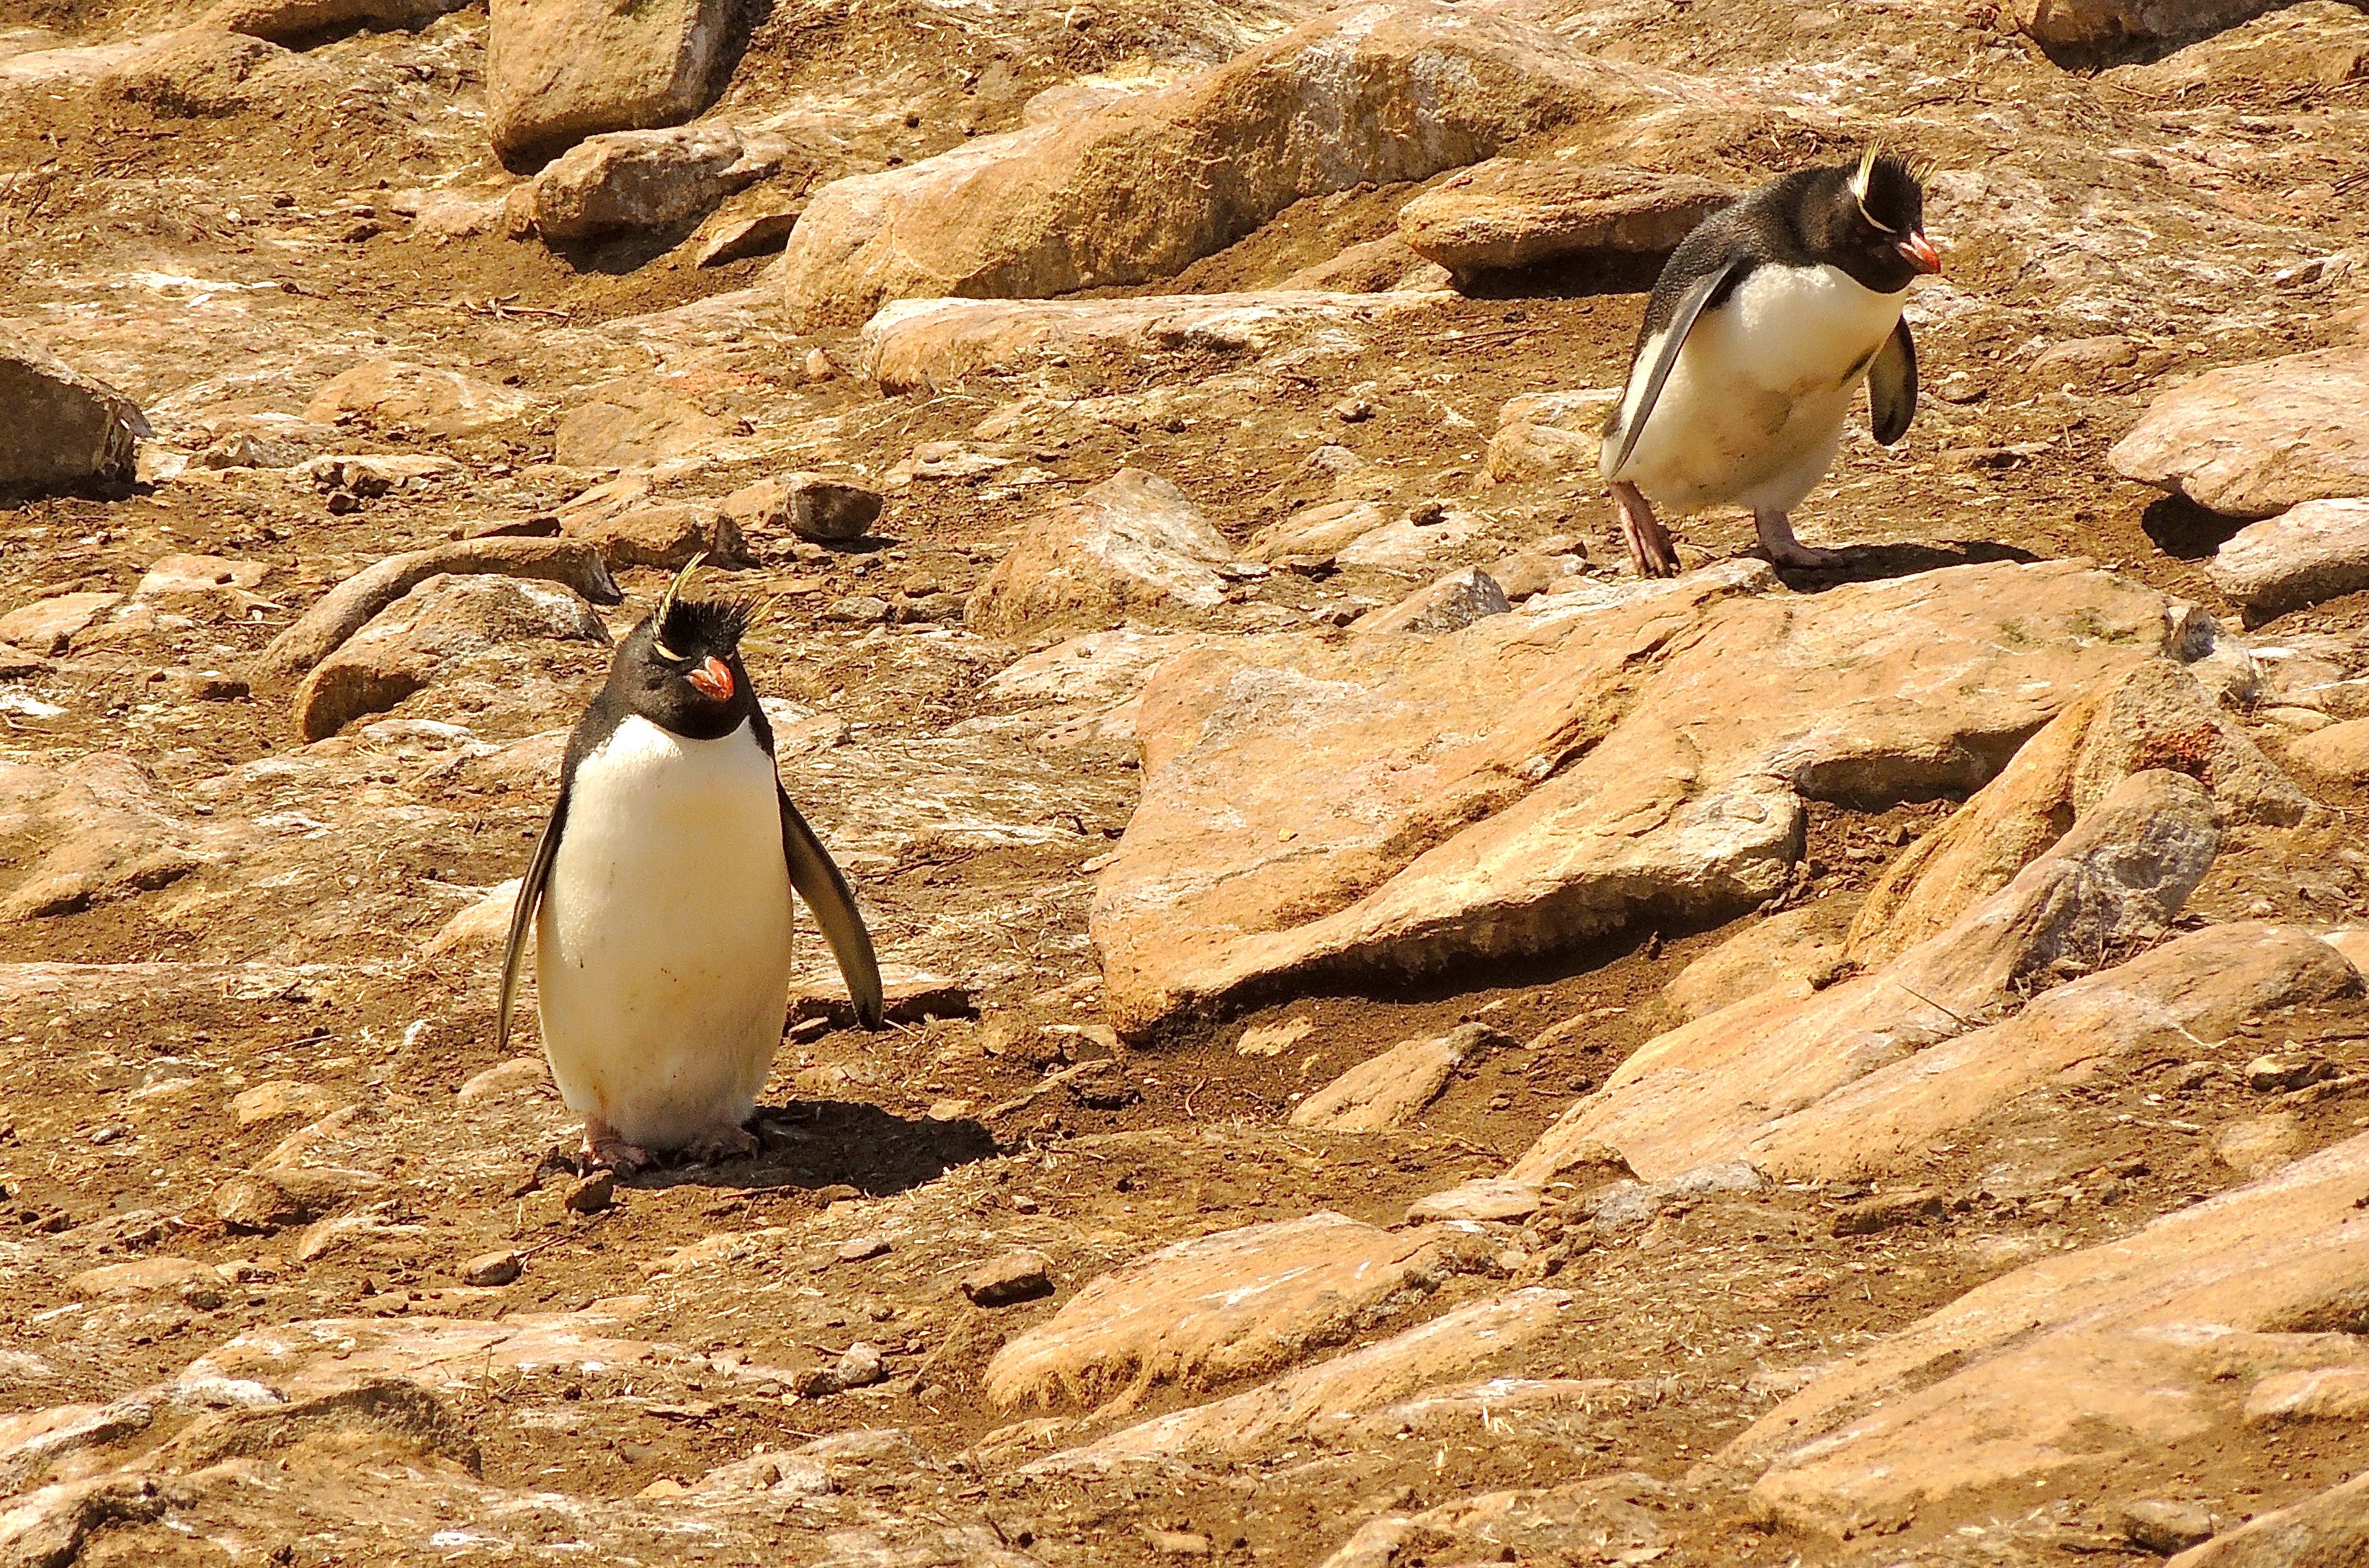 Southern Rockhopper Penguins